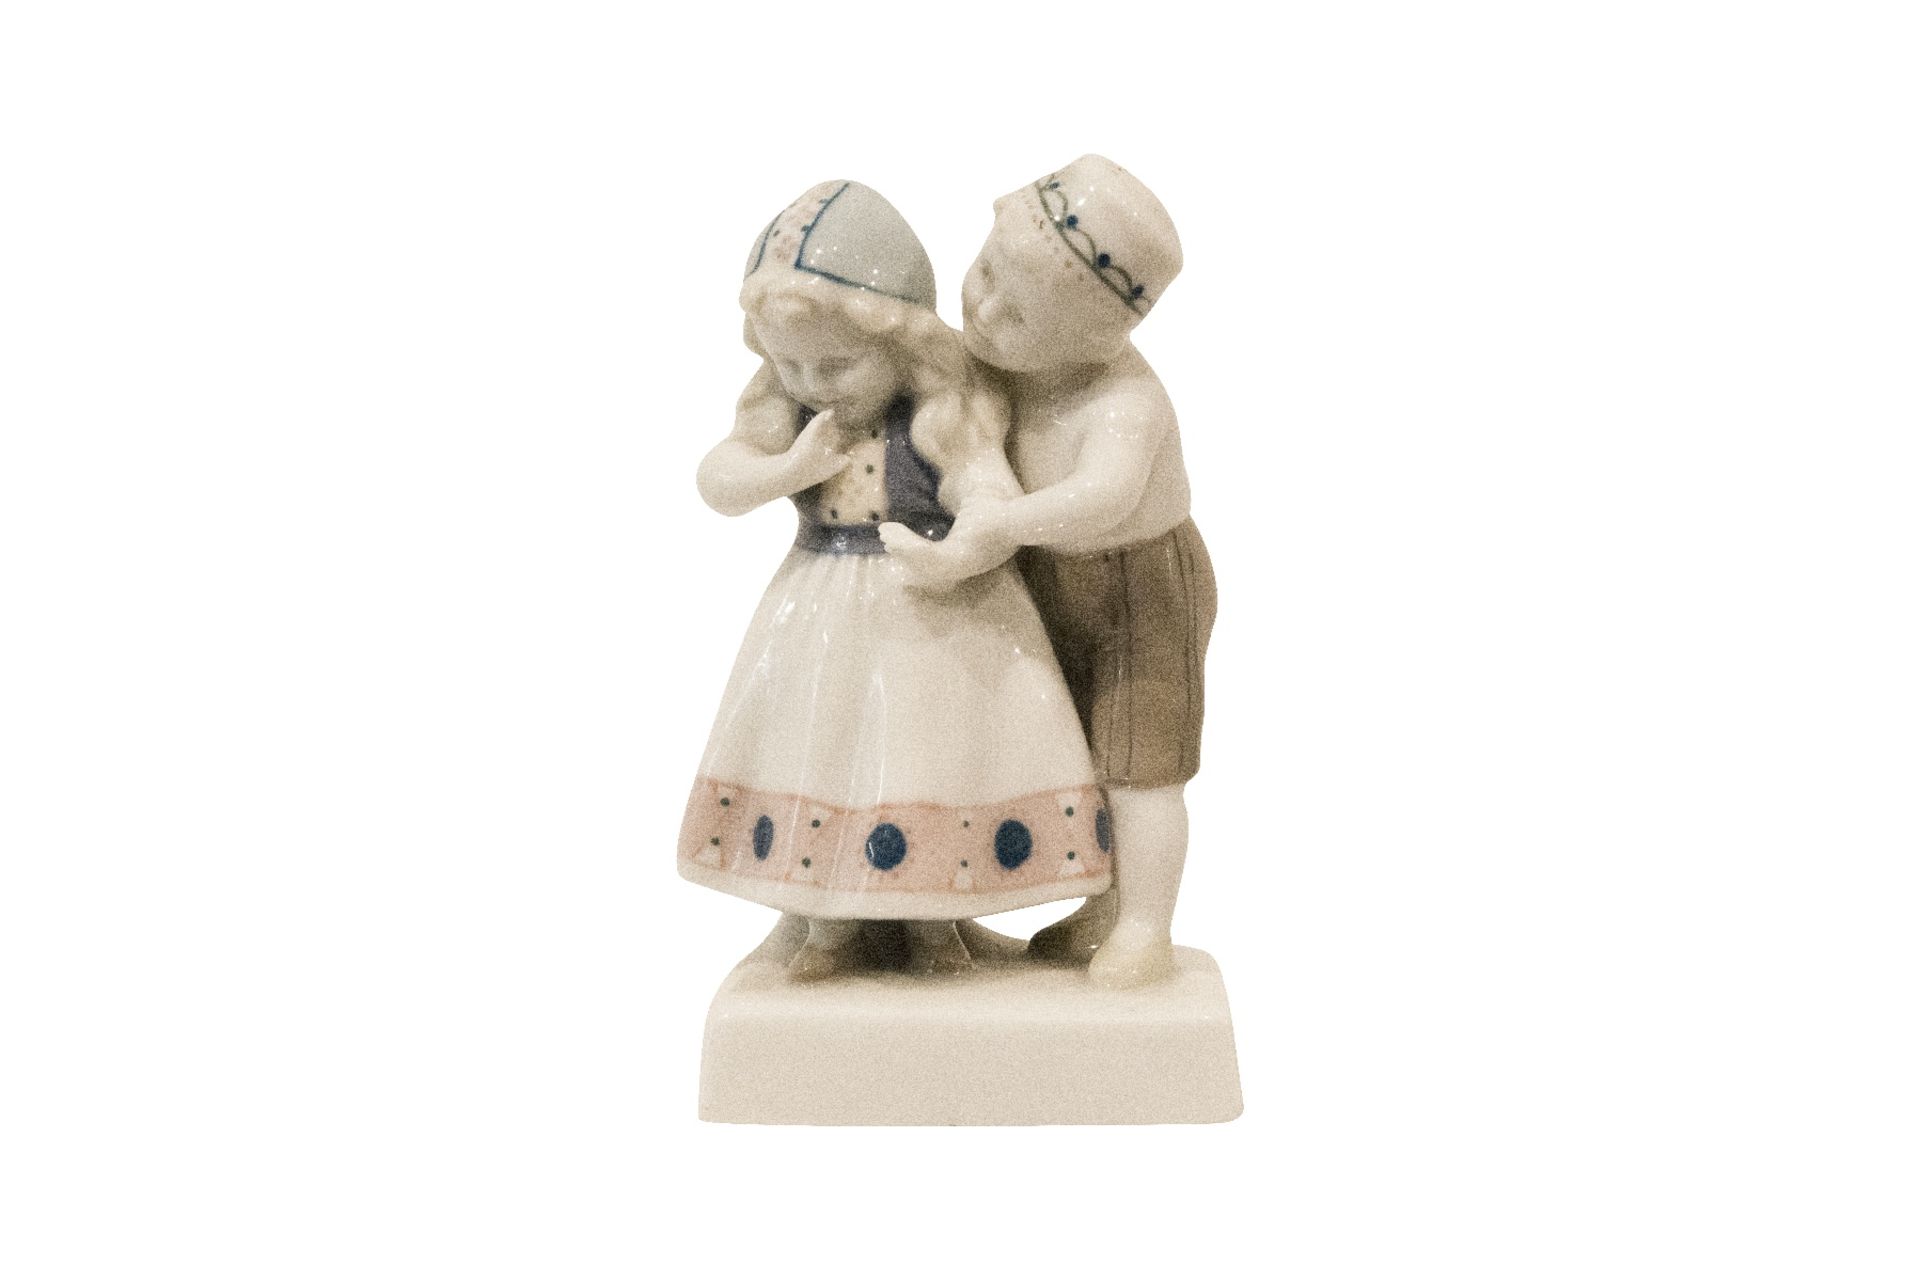 Porzellanmanufaktur Goebel Erste Liebe | Goebel Porcelain Manufa ctory First Love